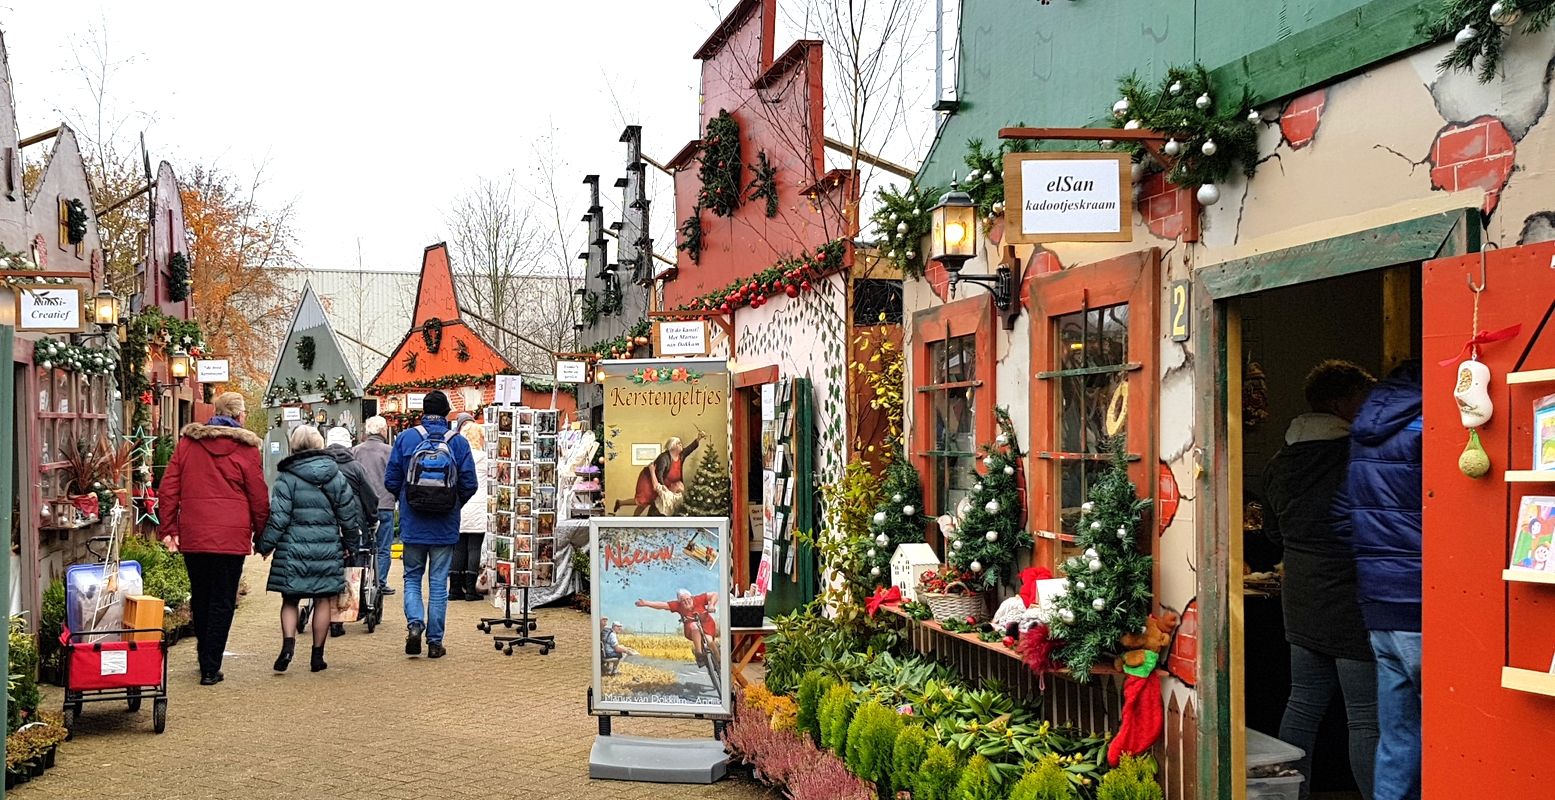 Winkelen in de huisjes van het KerstNostalgie kerstdorp. Foto: DagjeWeg.NL